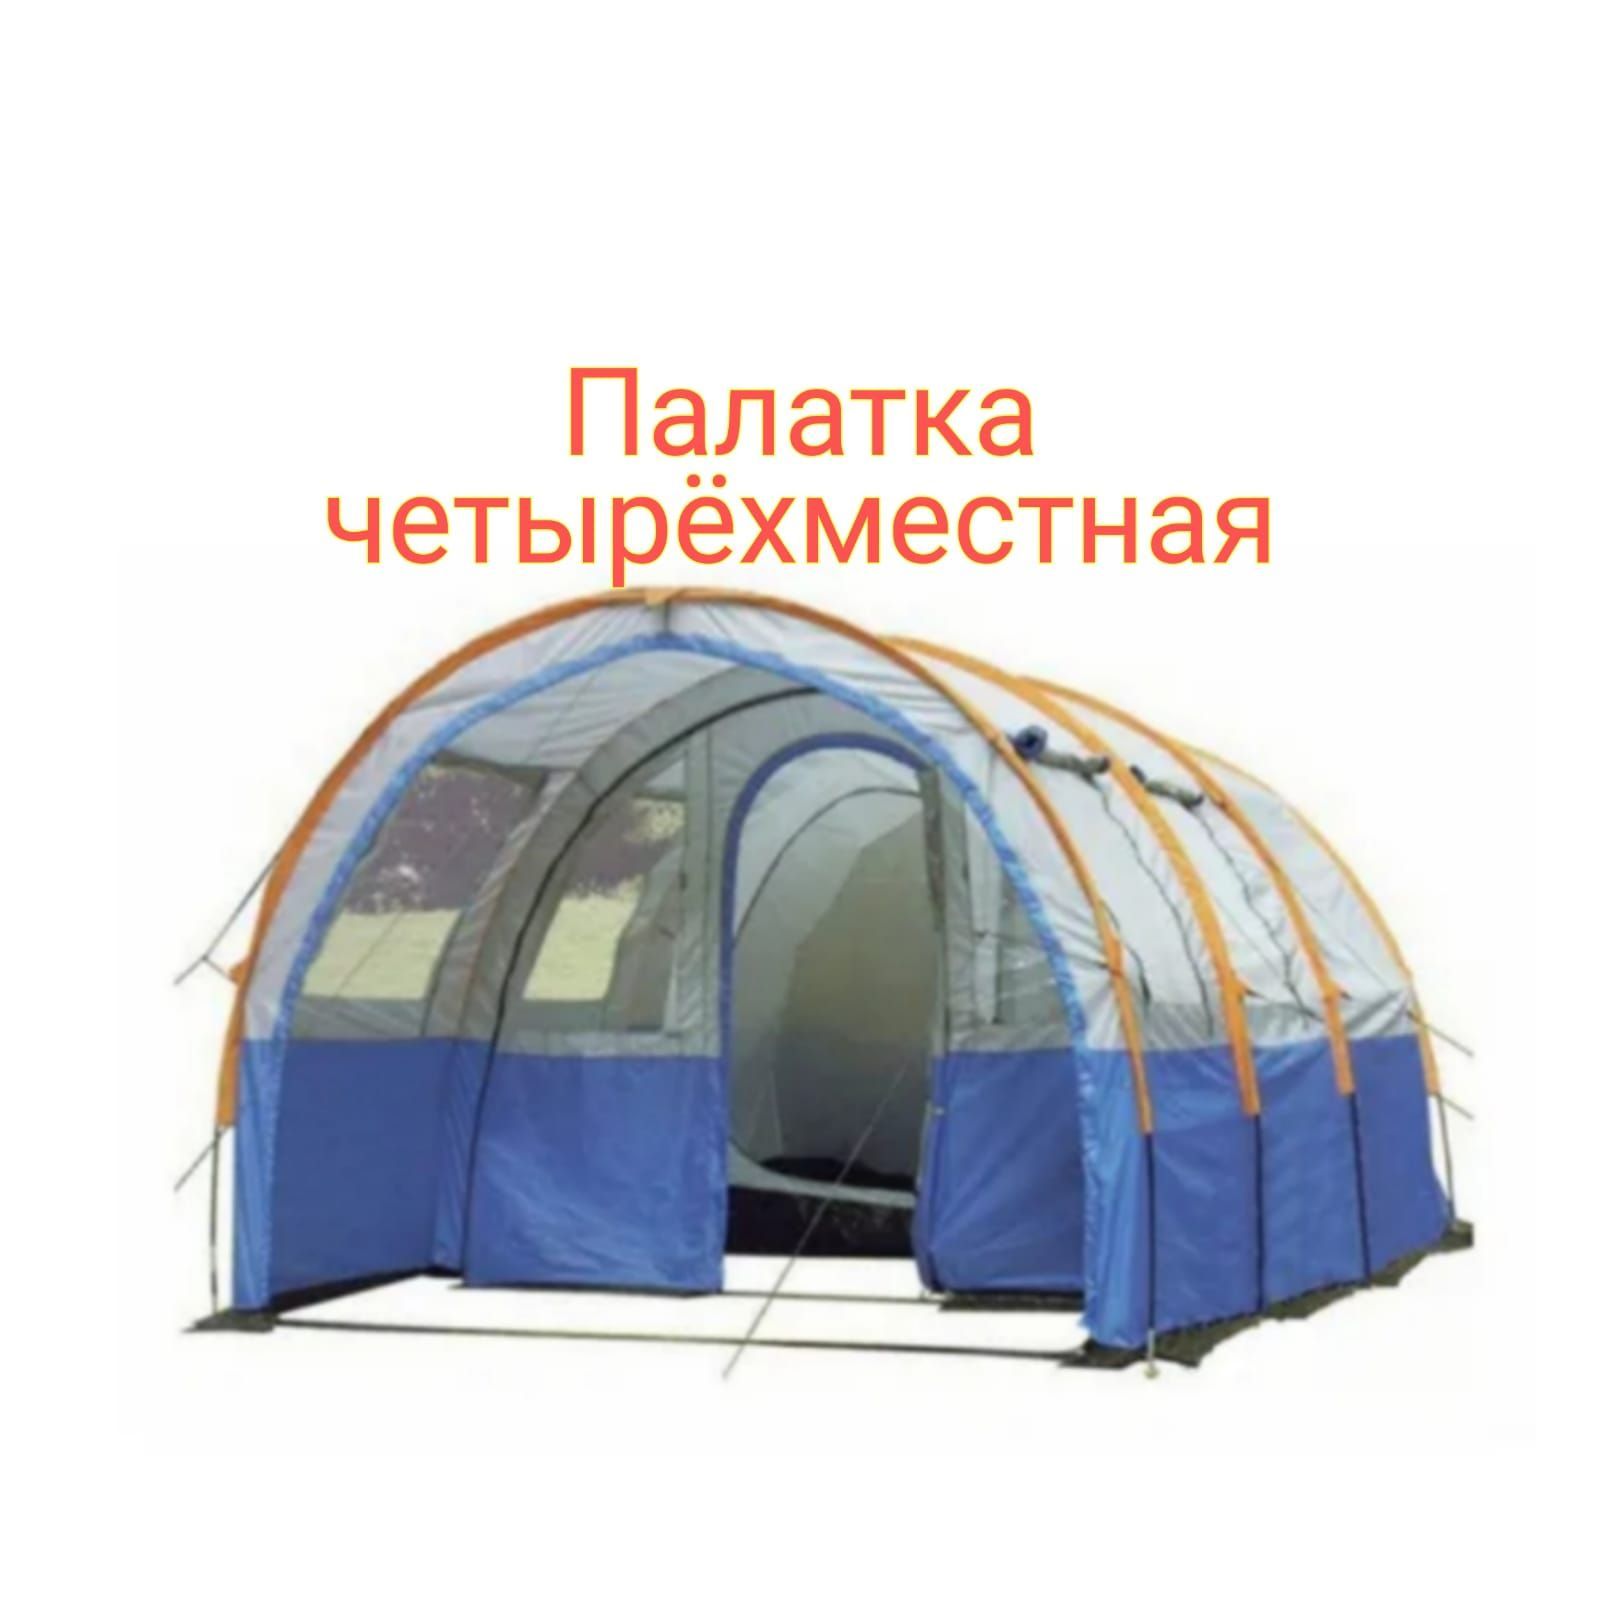 Палатка 2 х местная купить недорого. Палатка кемпинговая Lanyu ly-1801. Палатка 4-х местная ангар, Lanyu ly-1801. Палатка St-8010 - 4-местная кемпинговая. Палатка 4-х местная Lanyu 1801 260x480x200см.